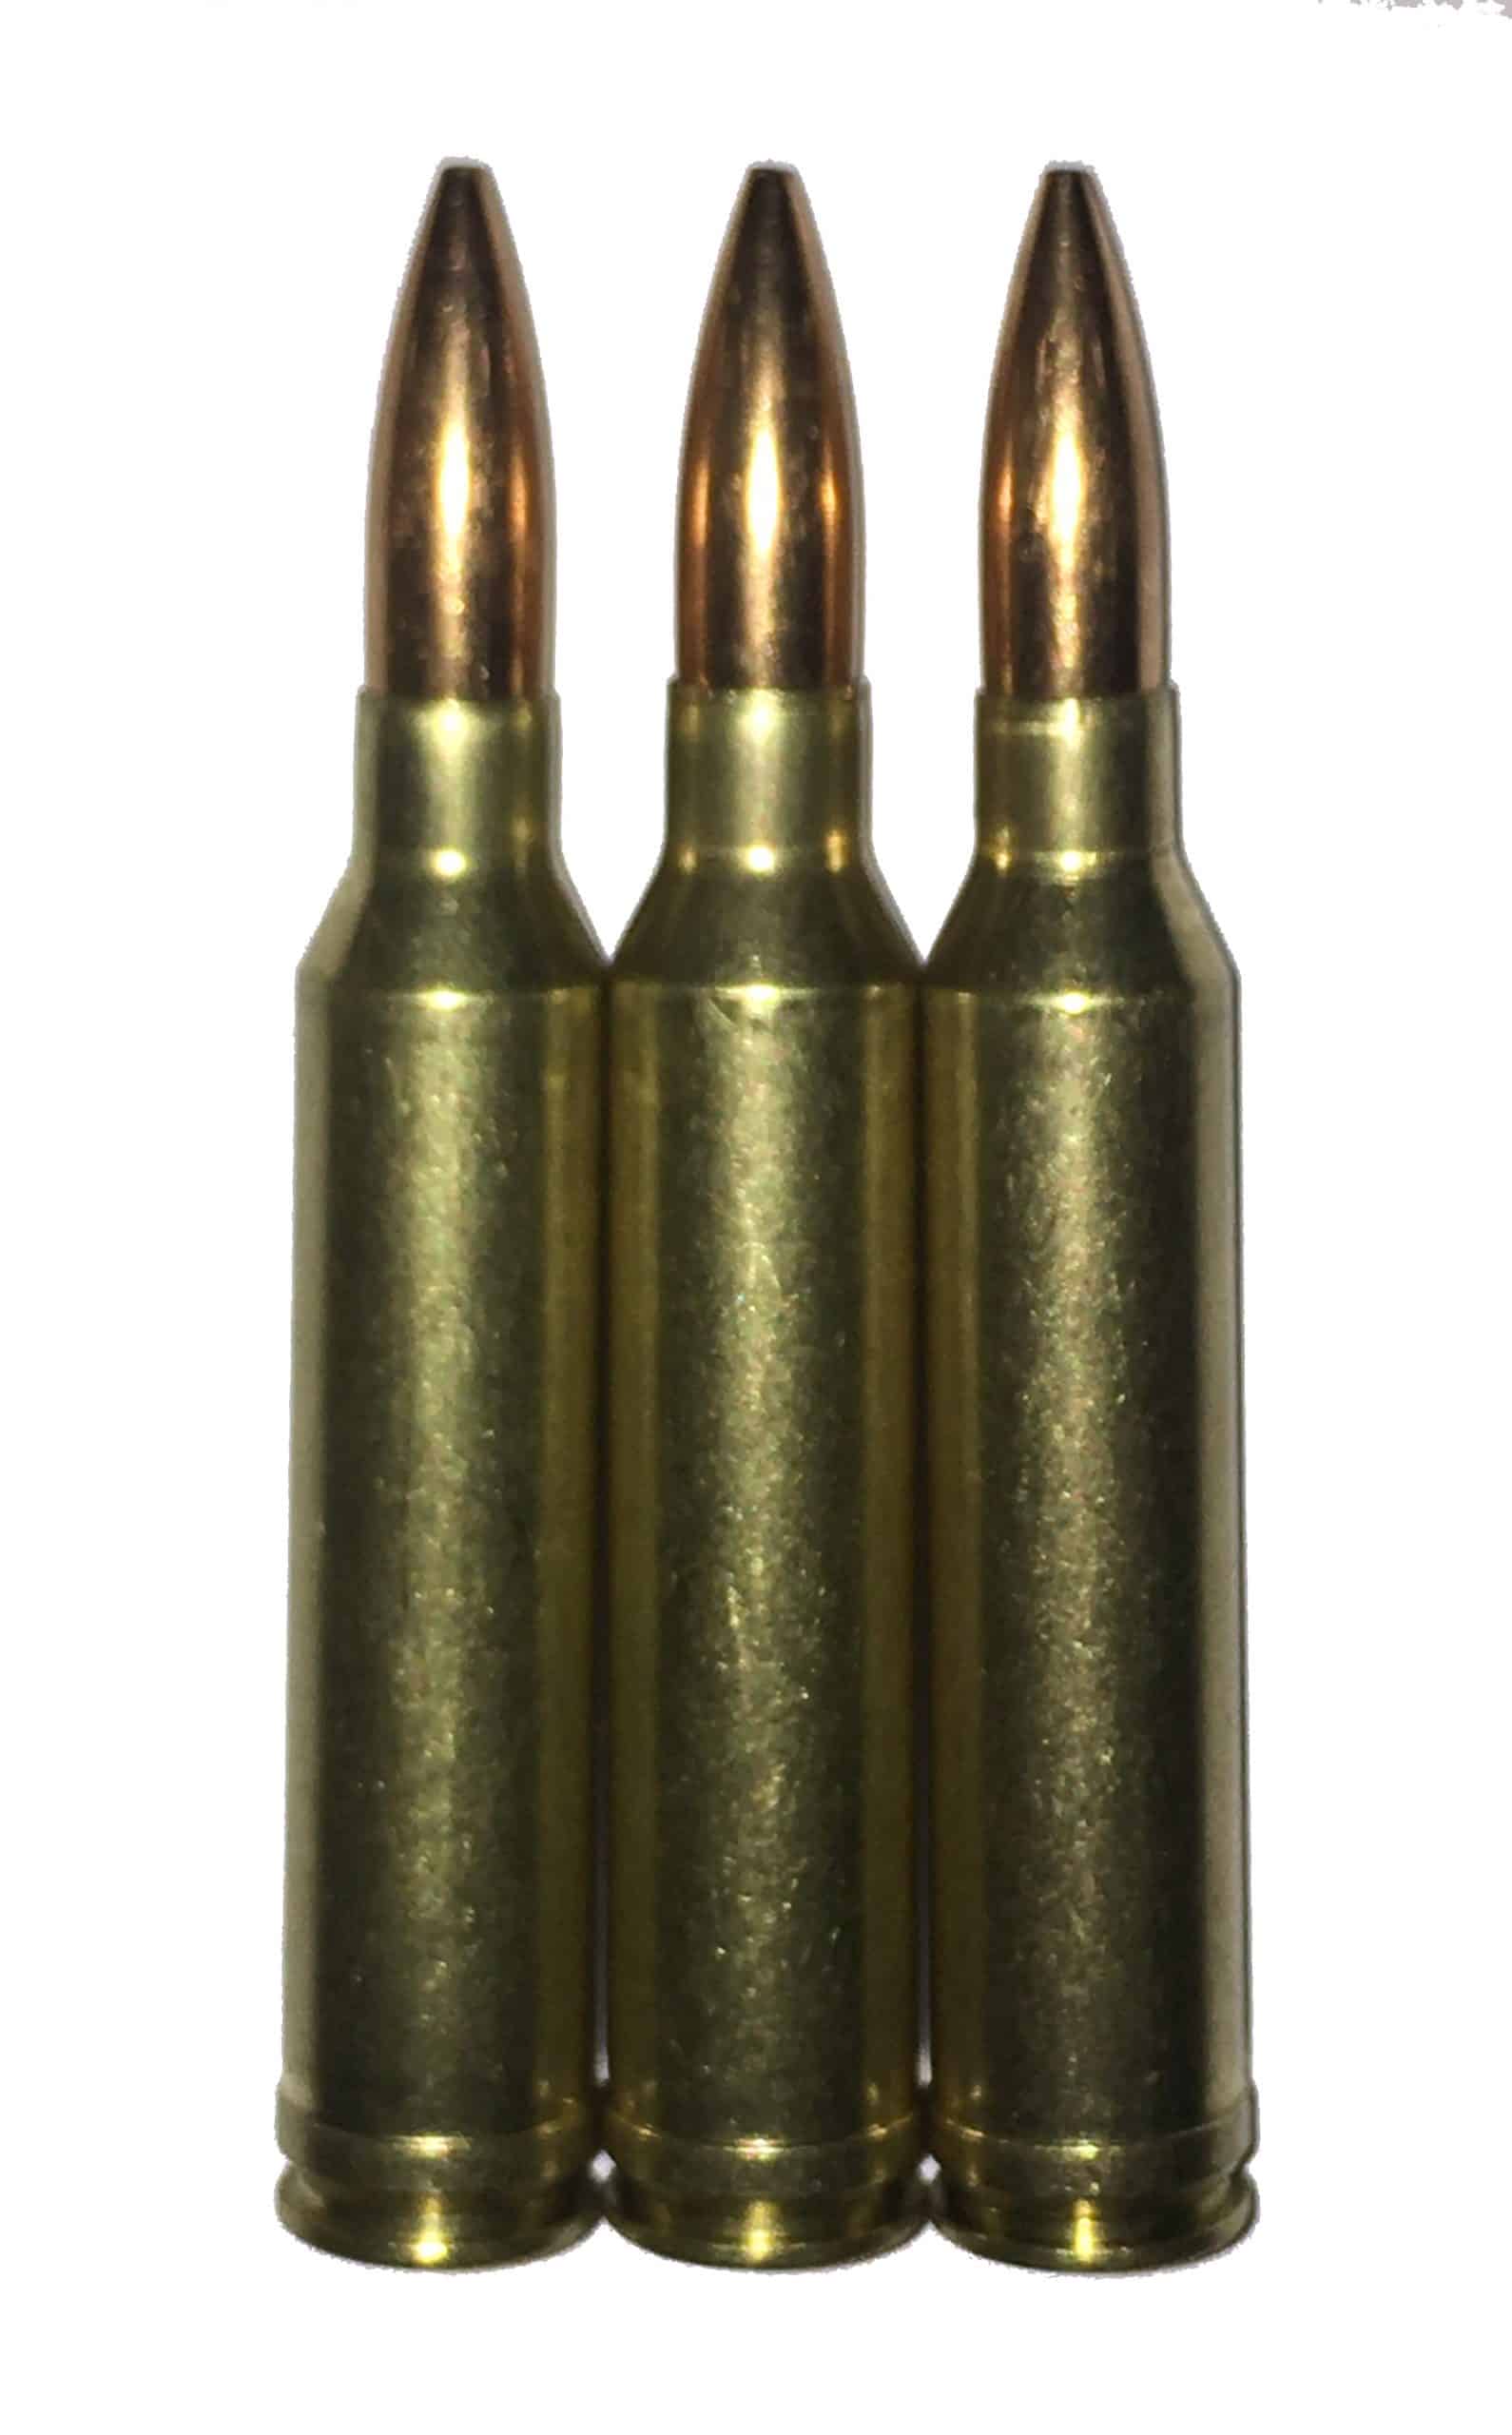 7mm Remington Magnum Dummy Rounds Snap Caps Fake Bullets J&M Spec. LLC